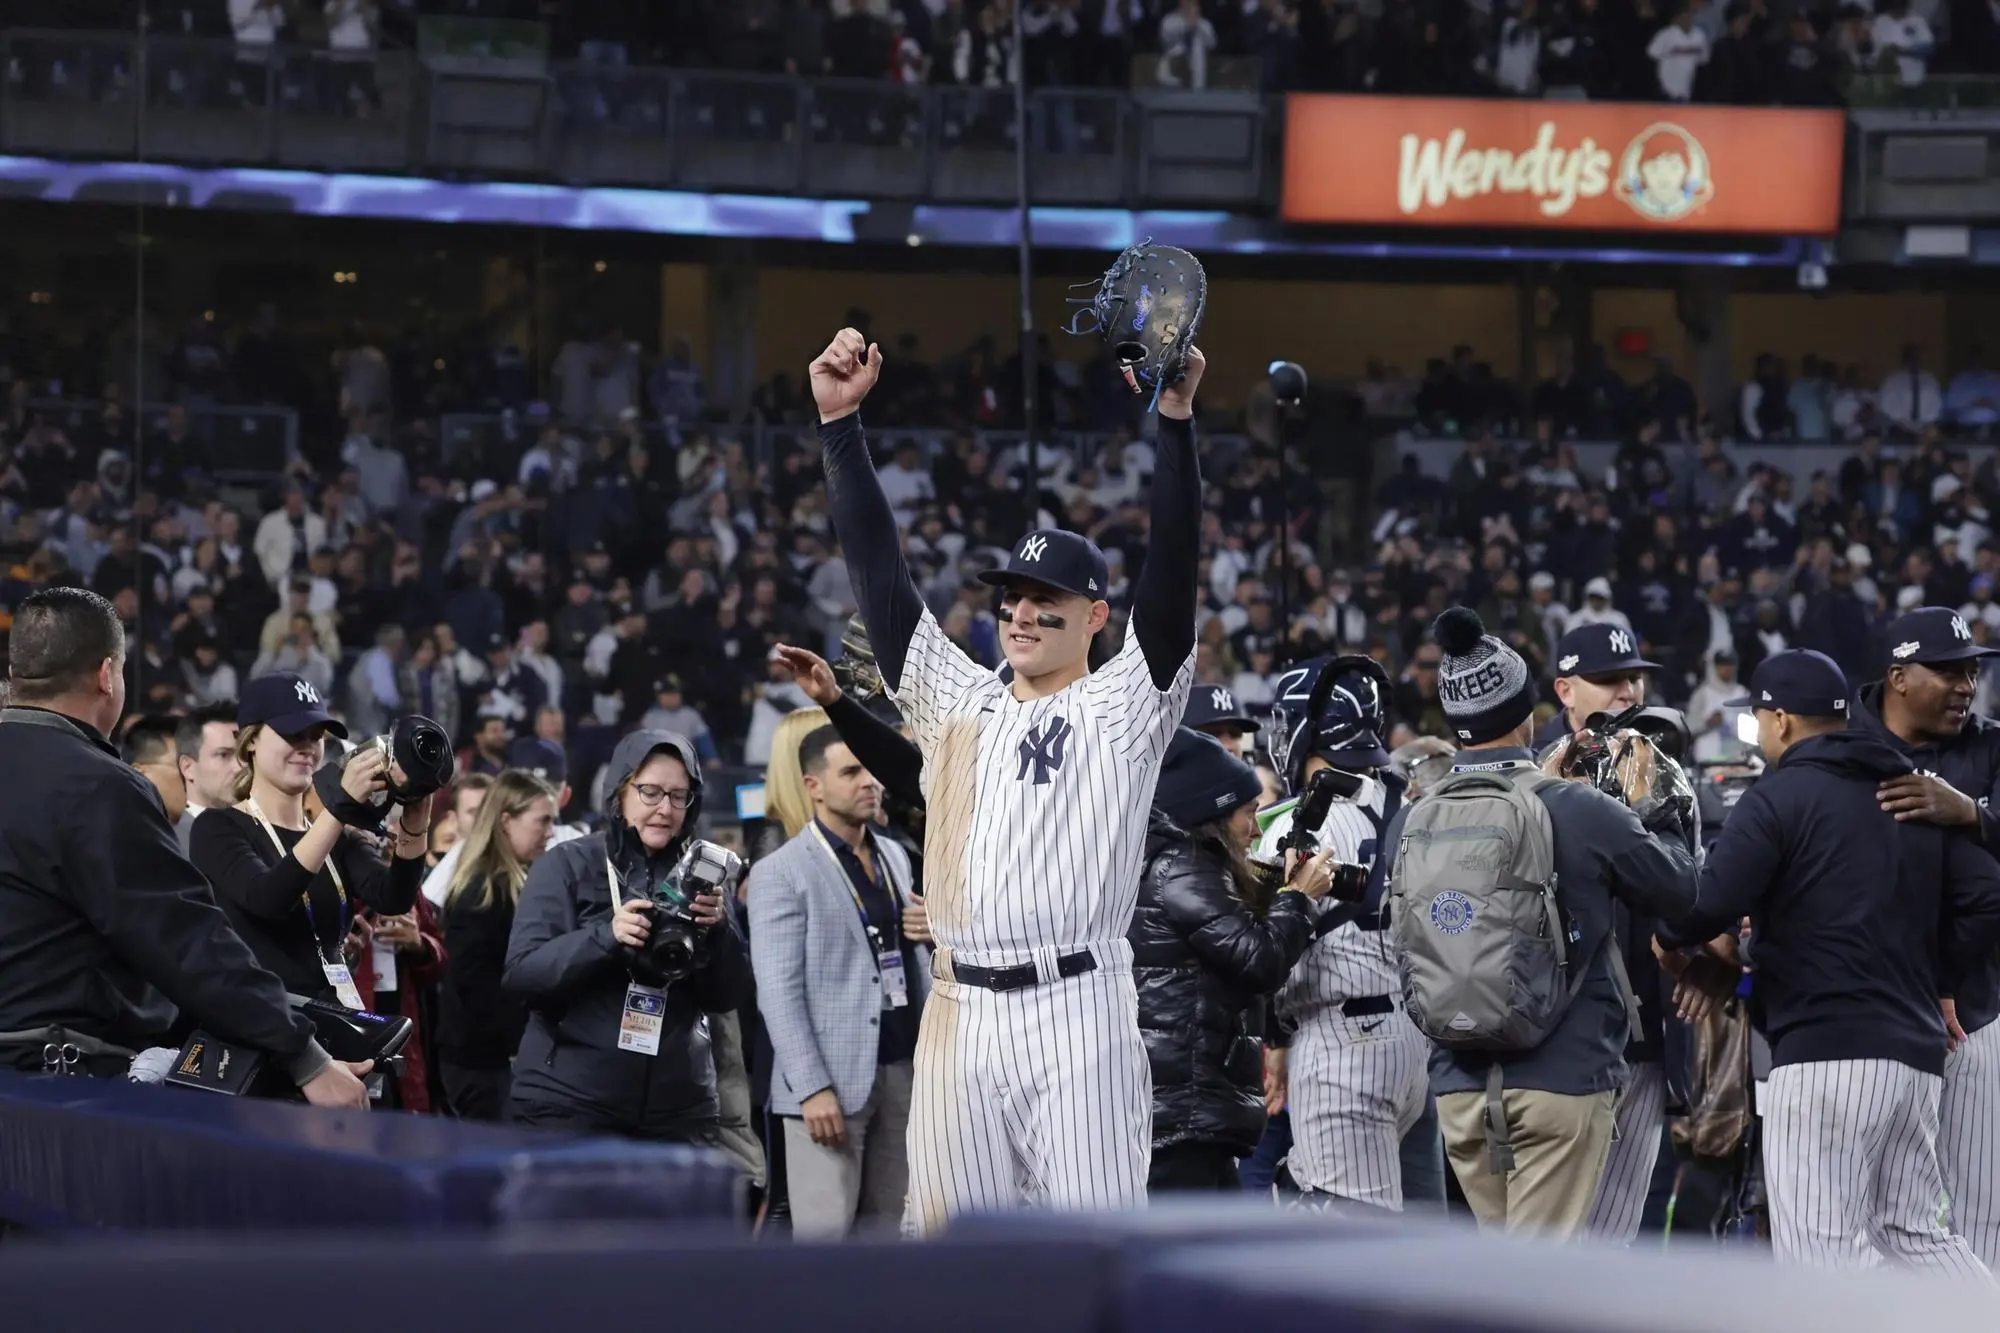 Anthony Rizzo festaggia una recente vittoria dei New York Yankees Yankees nei playoff della Mlb (Ansa)